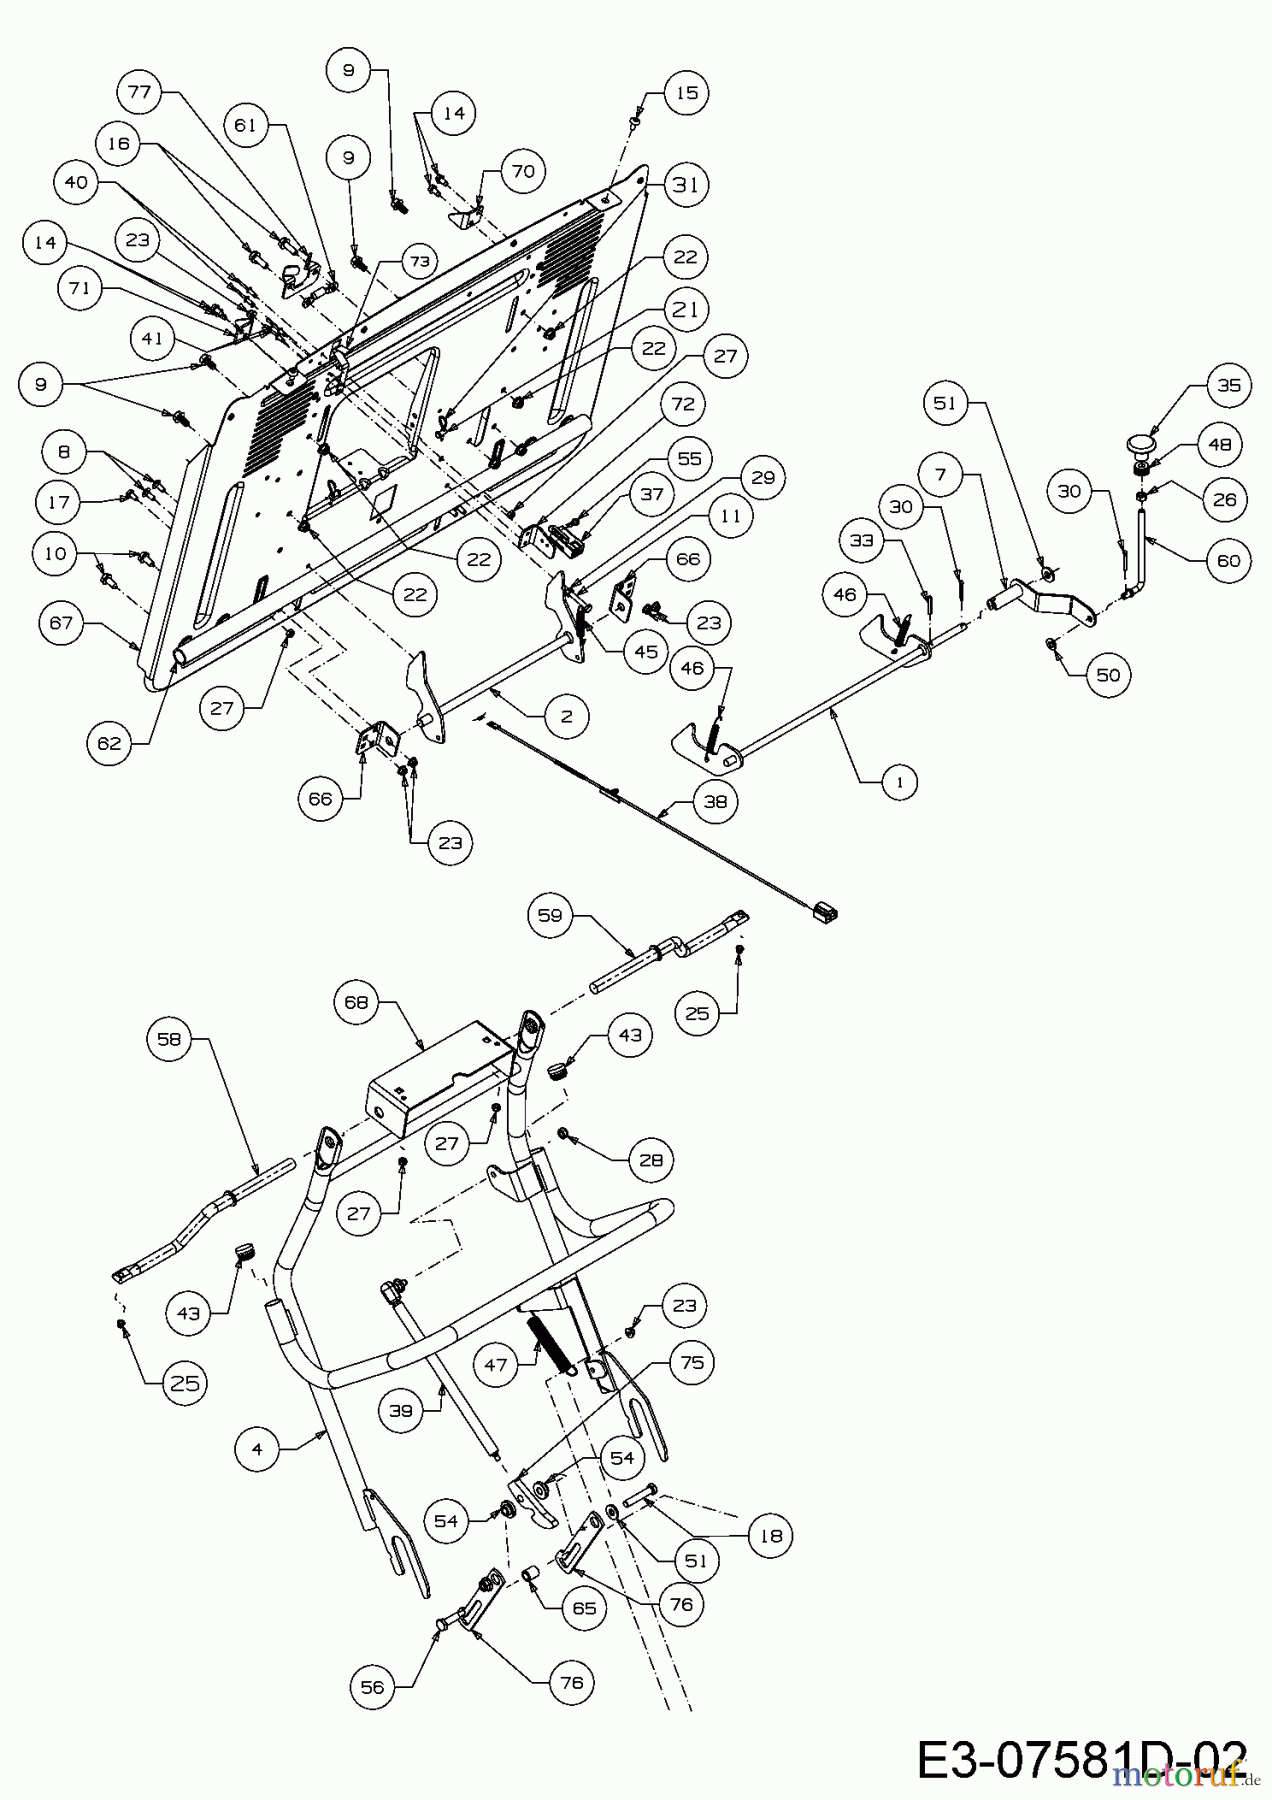  Massey Ferguson Rasentraktoren MF 41-22 RH 13HP91GN695  (2016) Aushebung Grasfangsack, Heckplatte